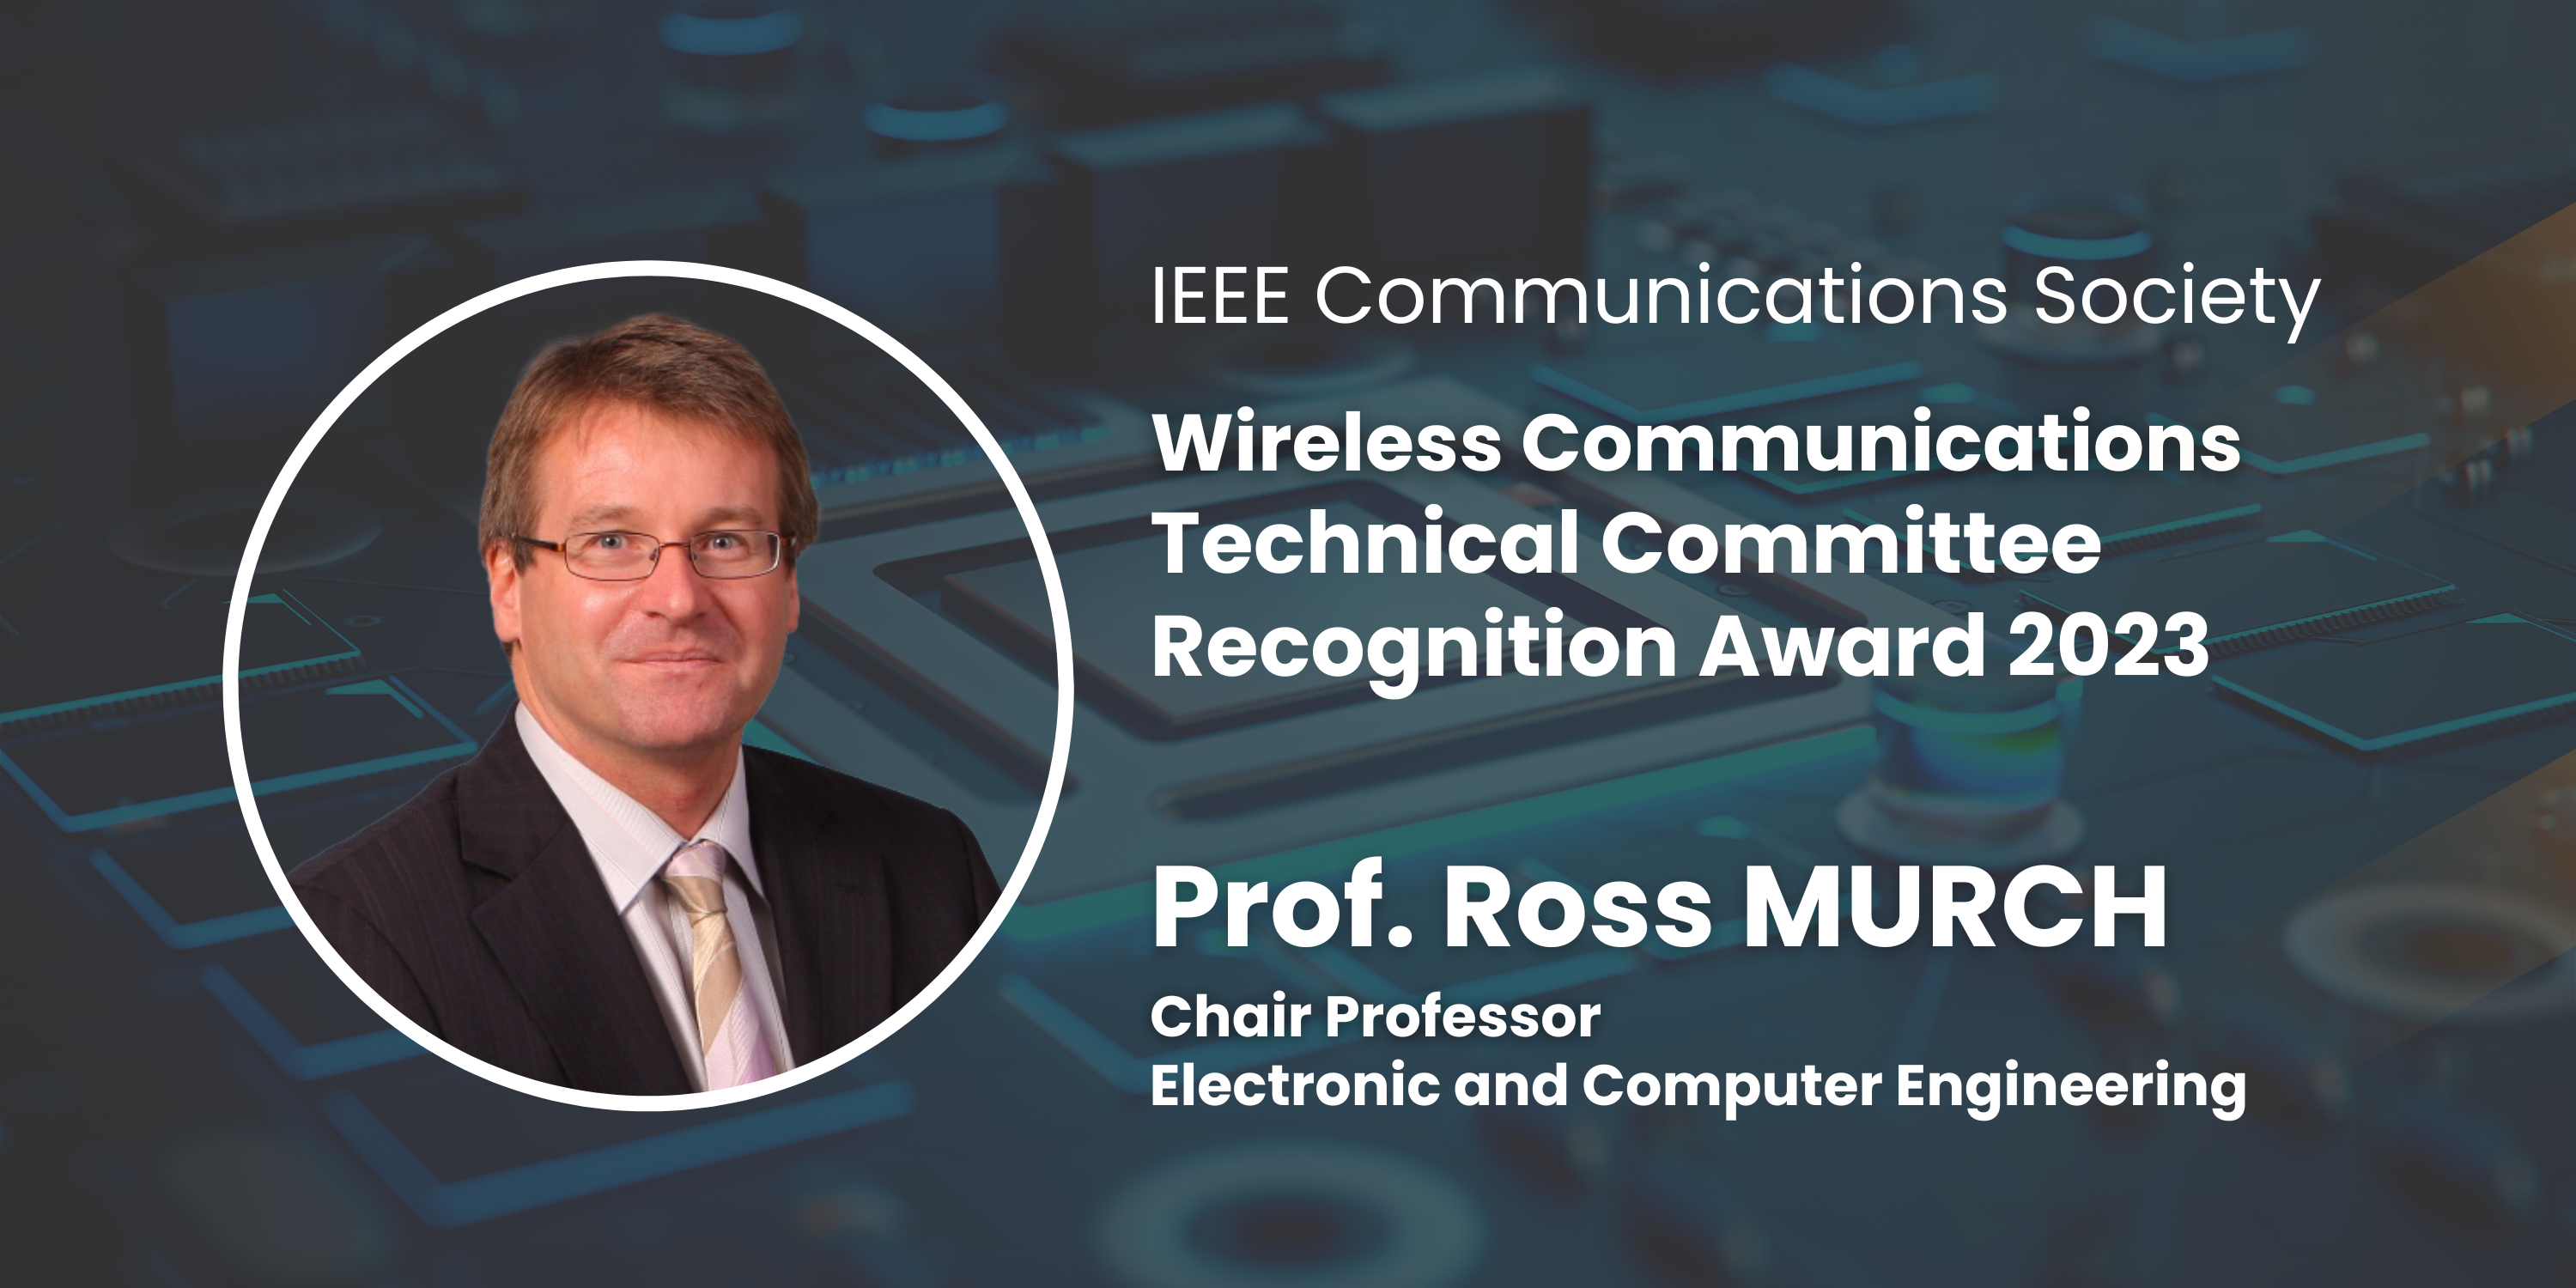 穆樂思教授在無線與移動通訊理論、系統和網絡具有高度知名度和貢獻良多，獲得嘉許。